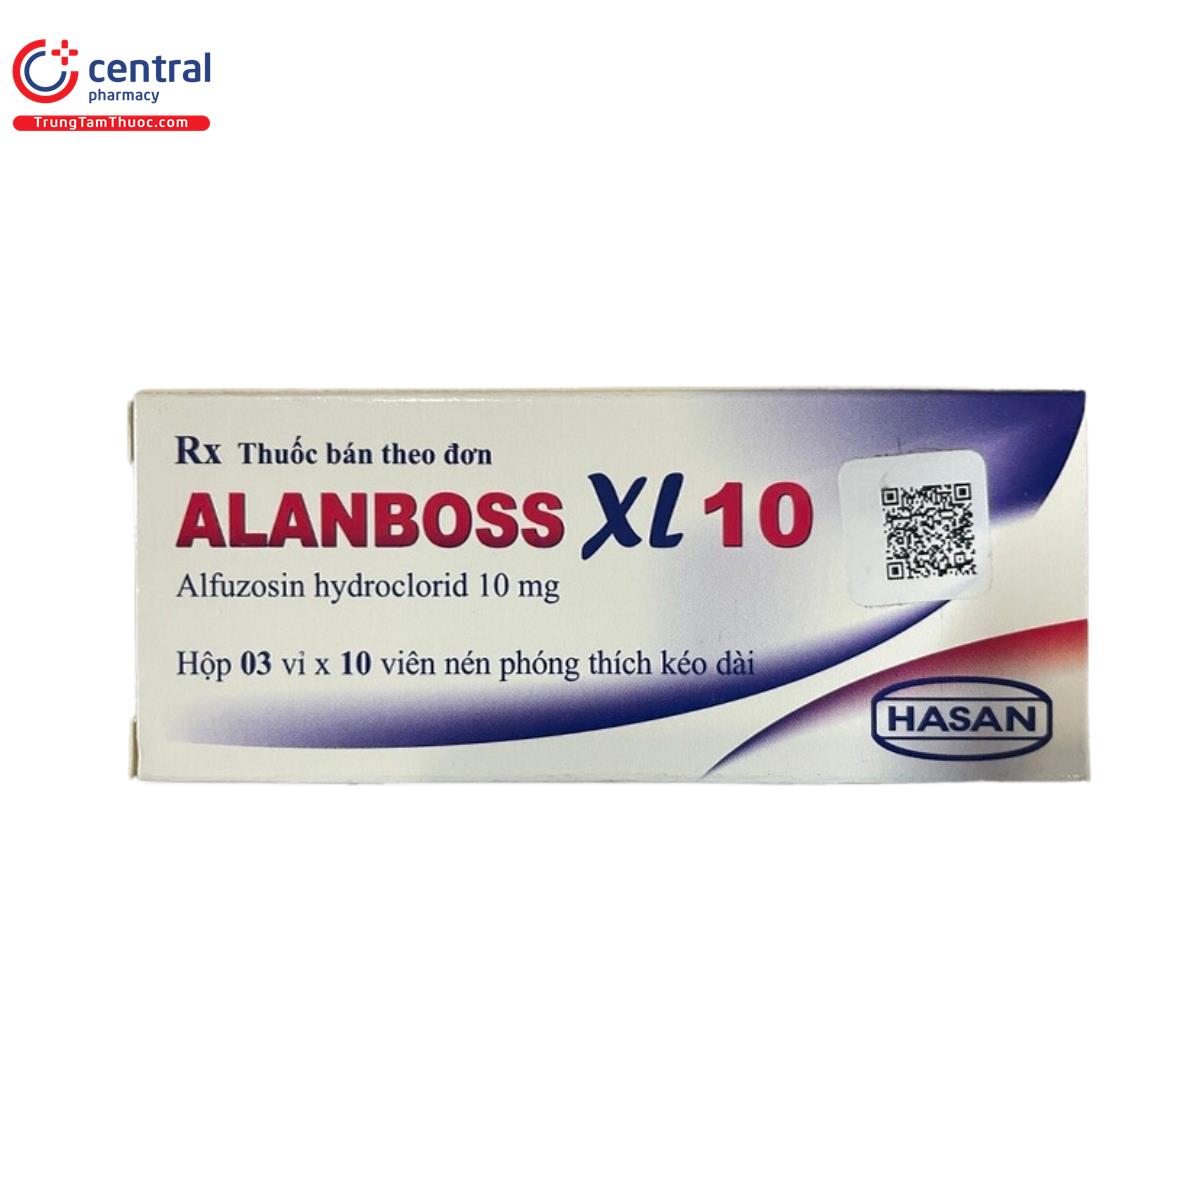 alanboss xl 10 2 J3262